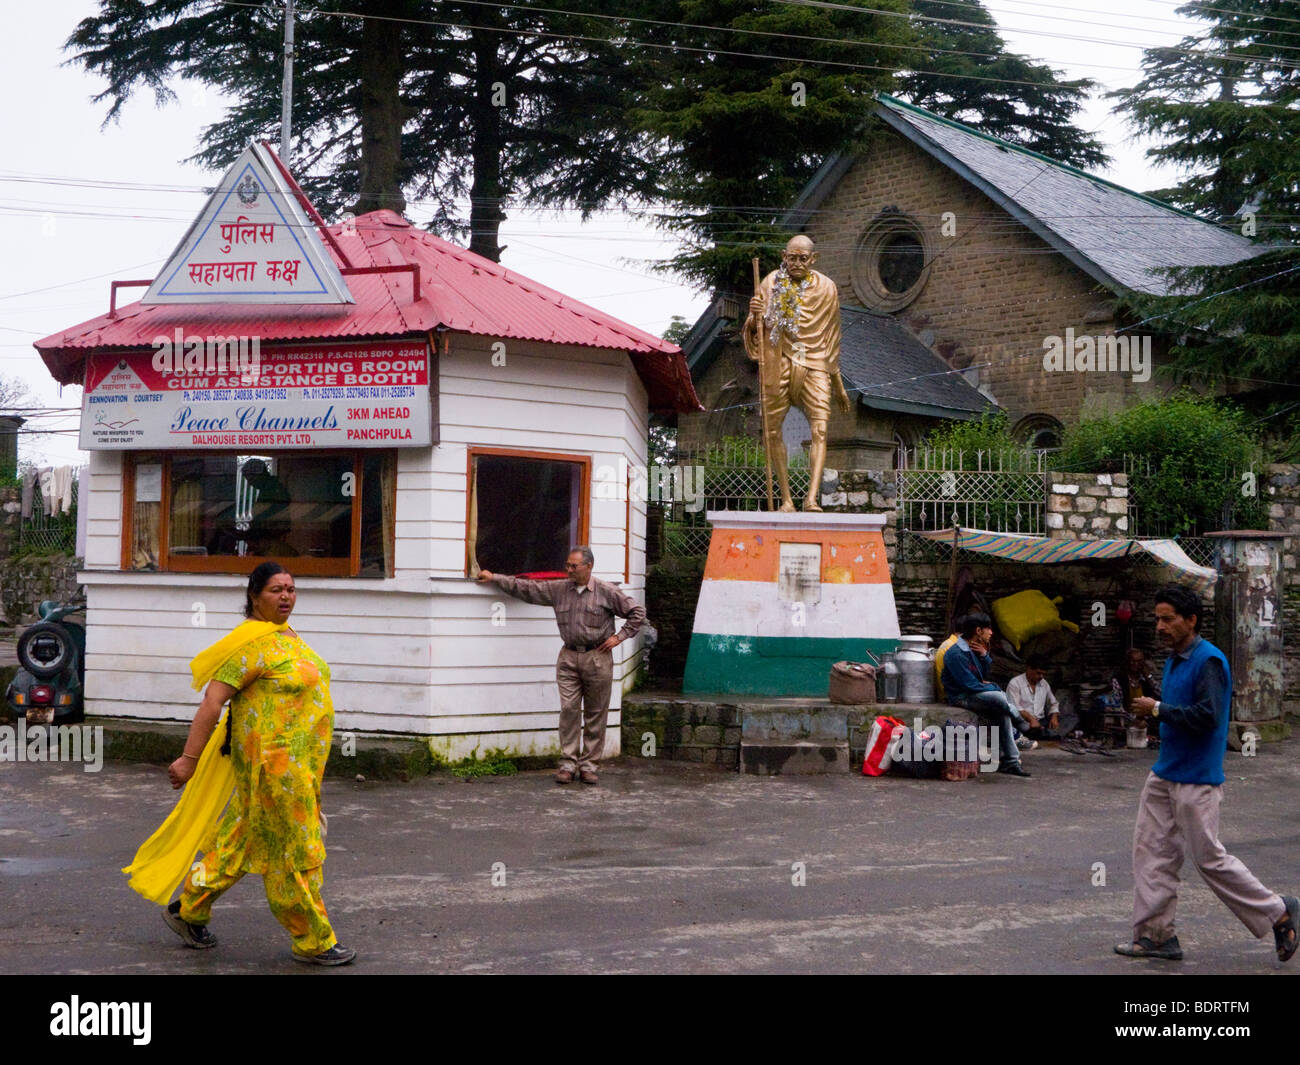 La polizia incident reporting chiosco / stazione e il Mahatma Gandhi statua, nel centro di Dalhousie. Himachal Pradesh. India. Foto Stock